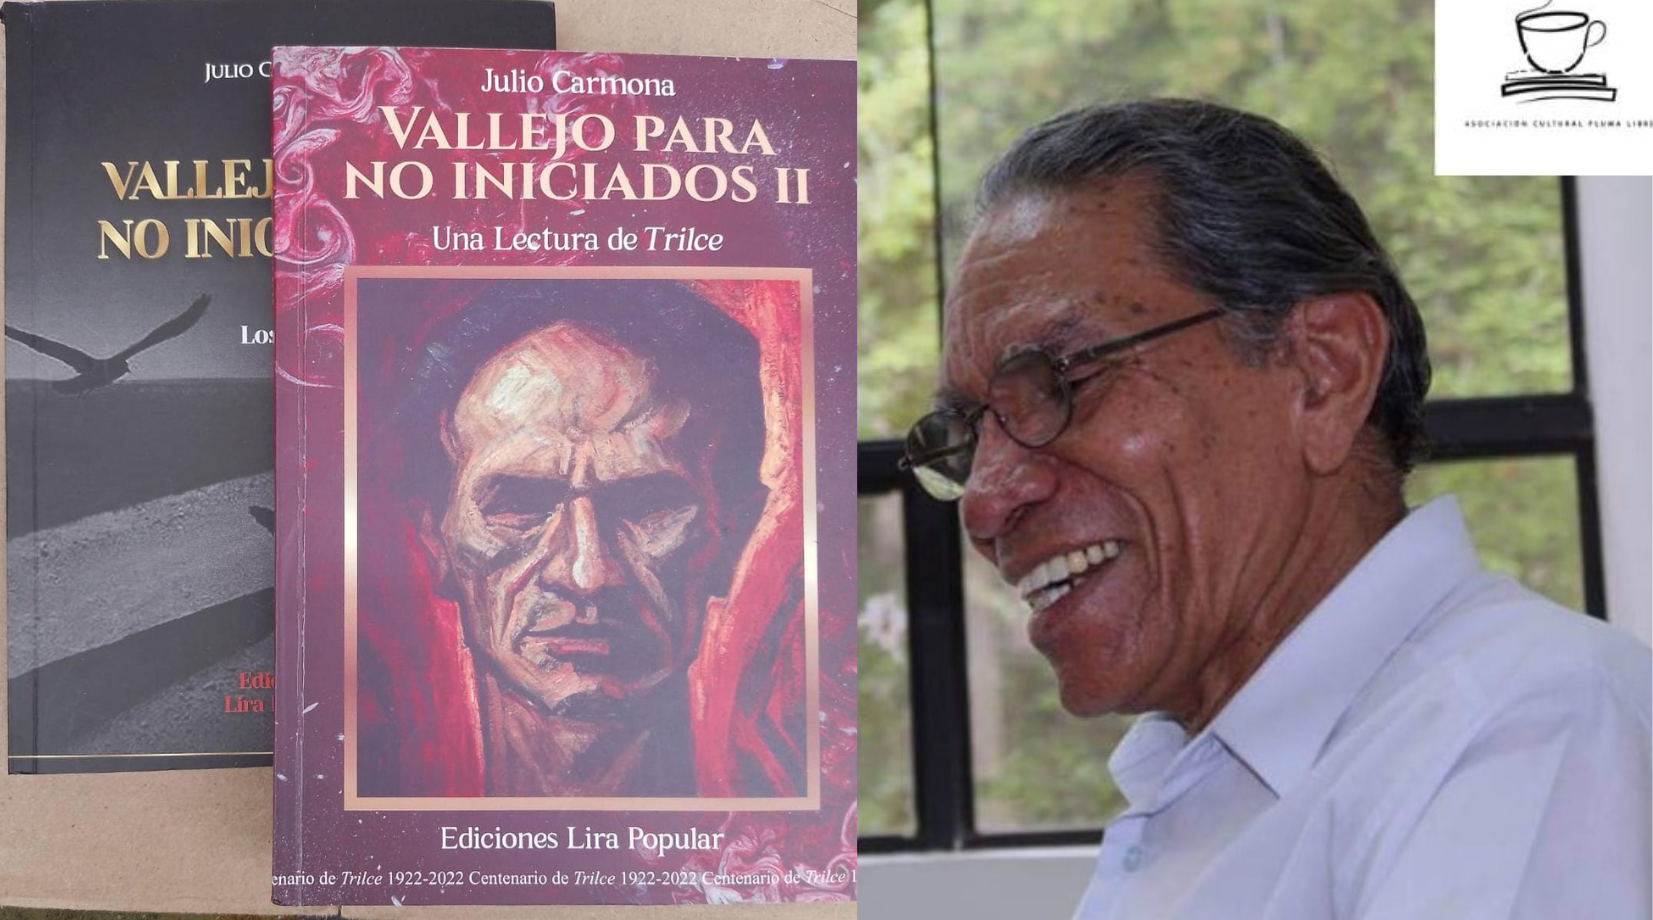 Poeta Julio Carmona devela significados de la obra vallejiana